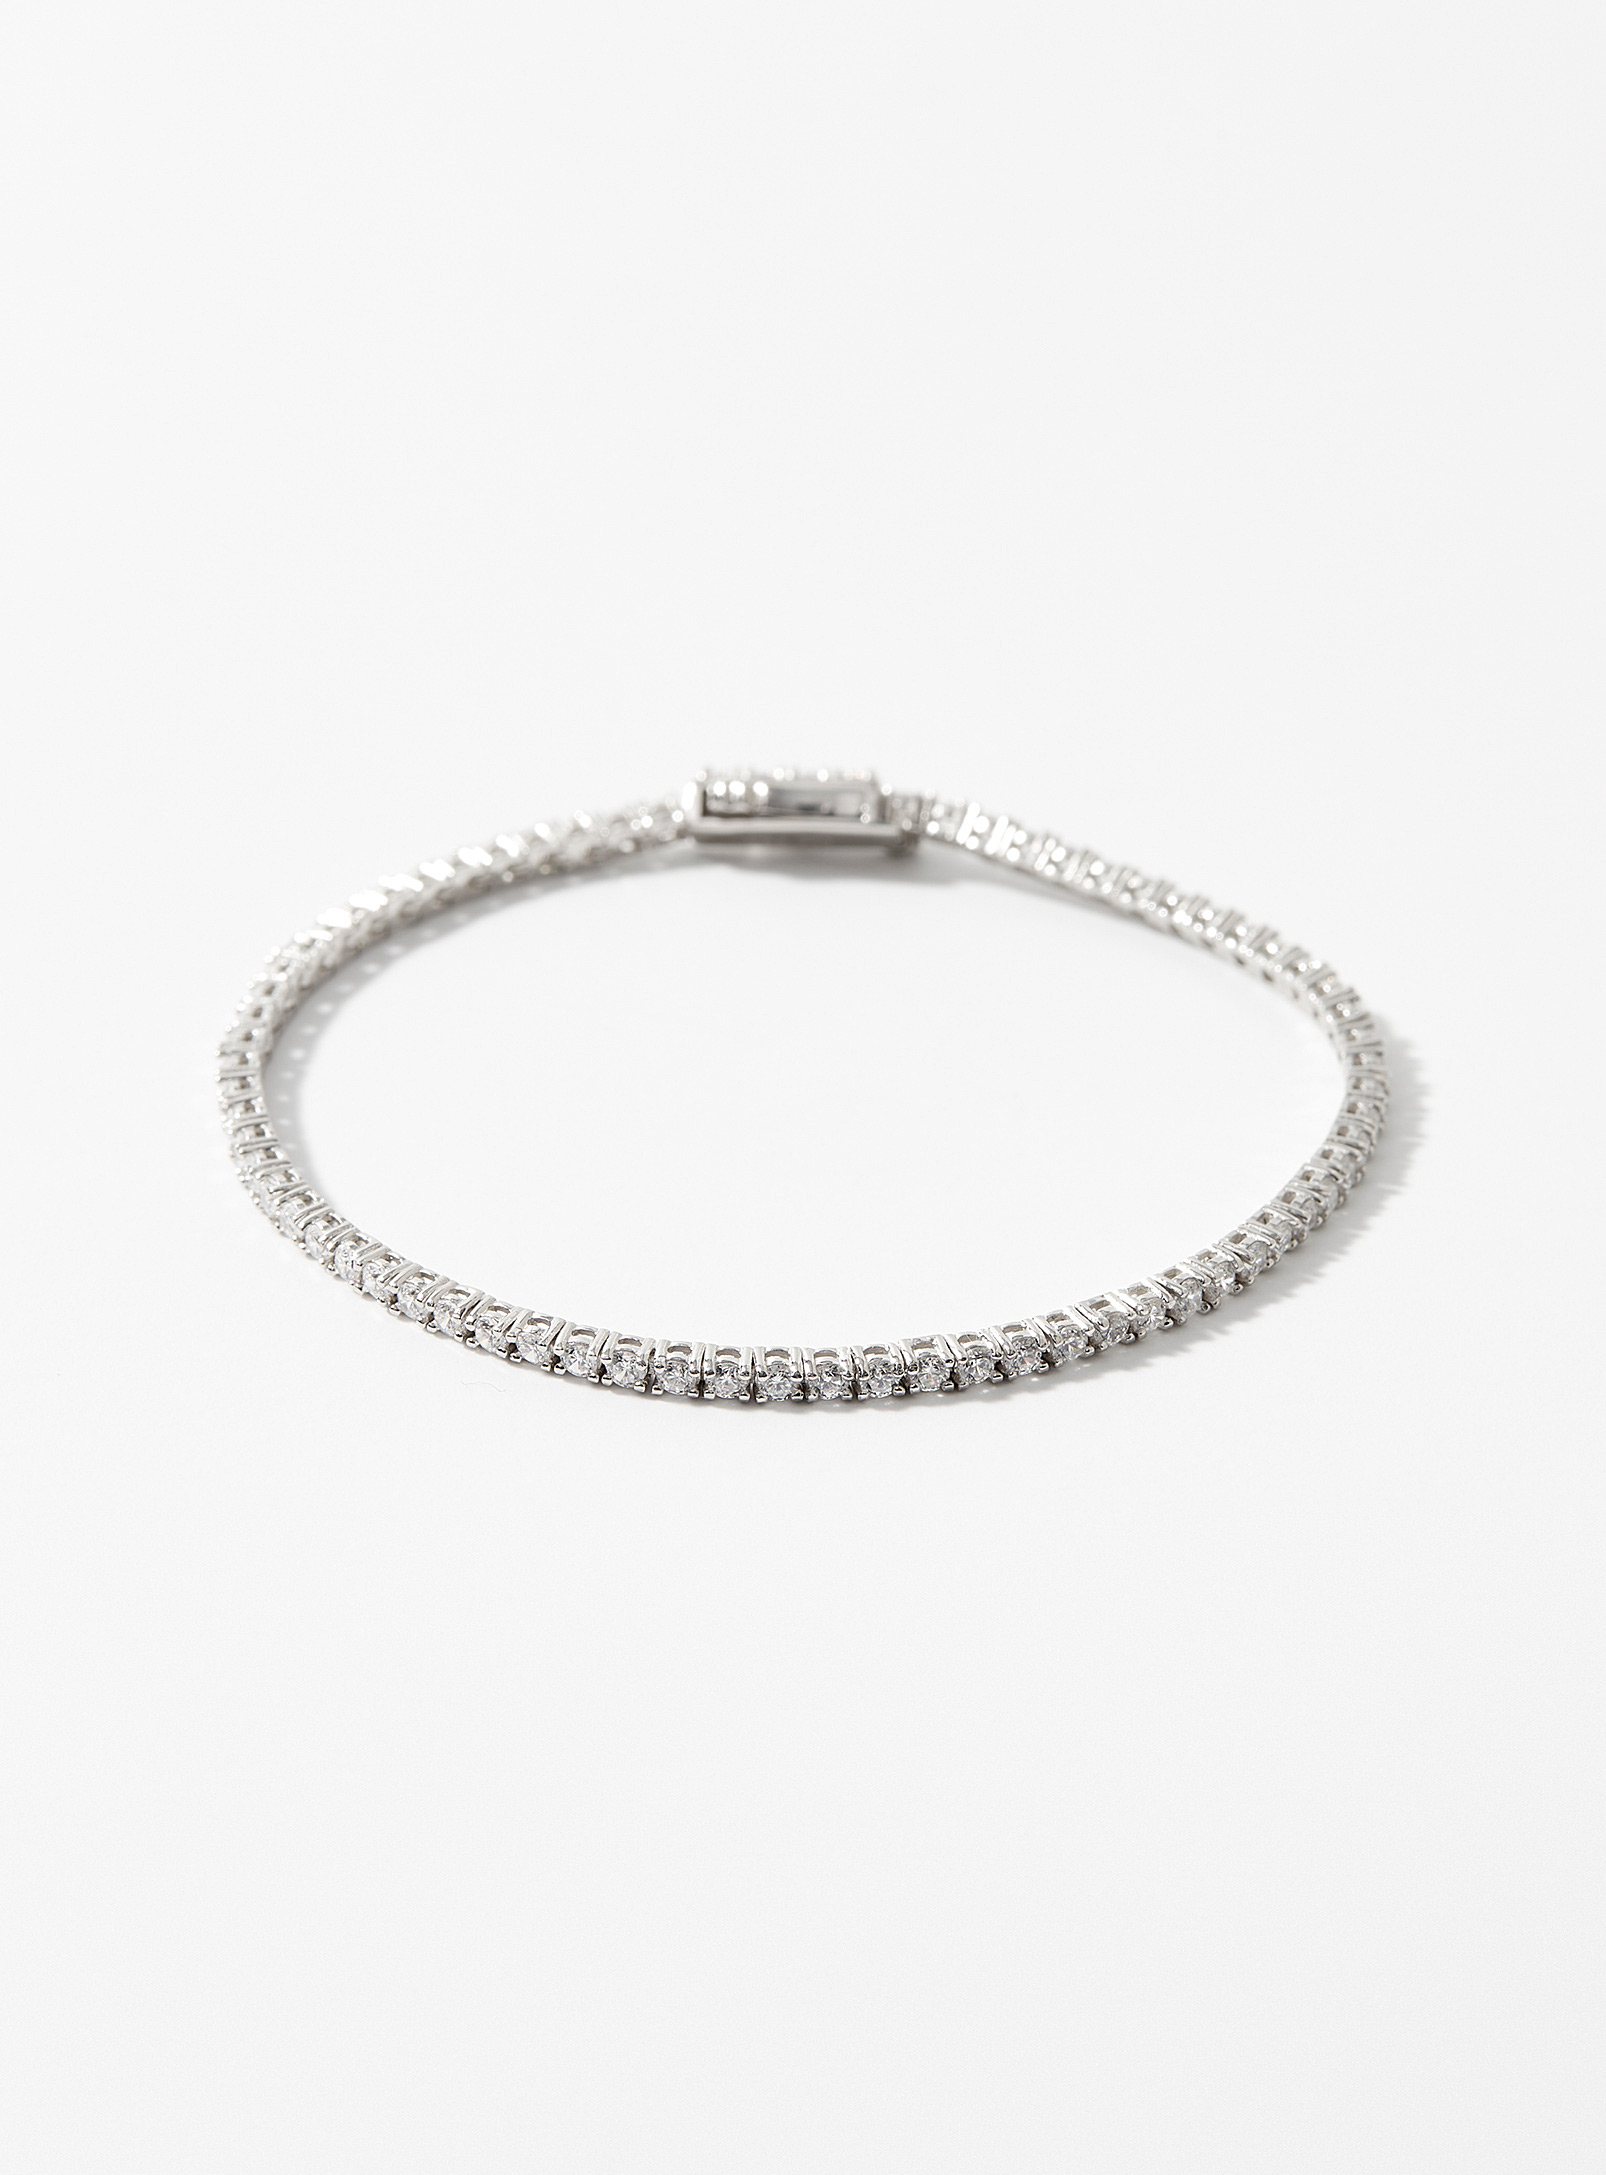 Simons - Women's Shimmery zircon tennis bracelet